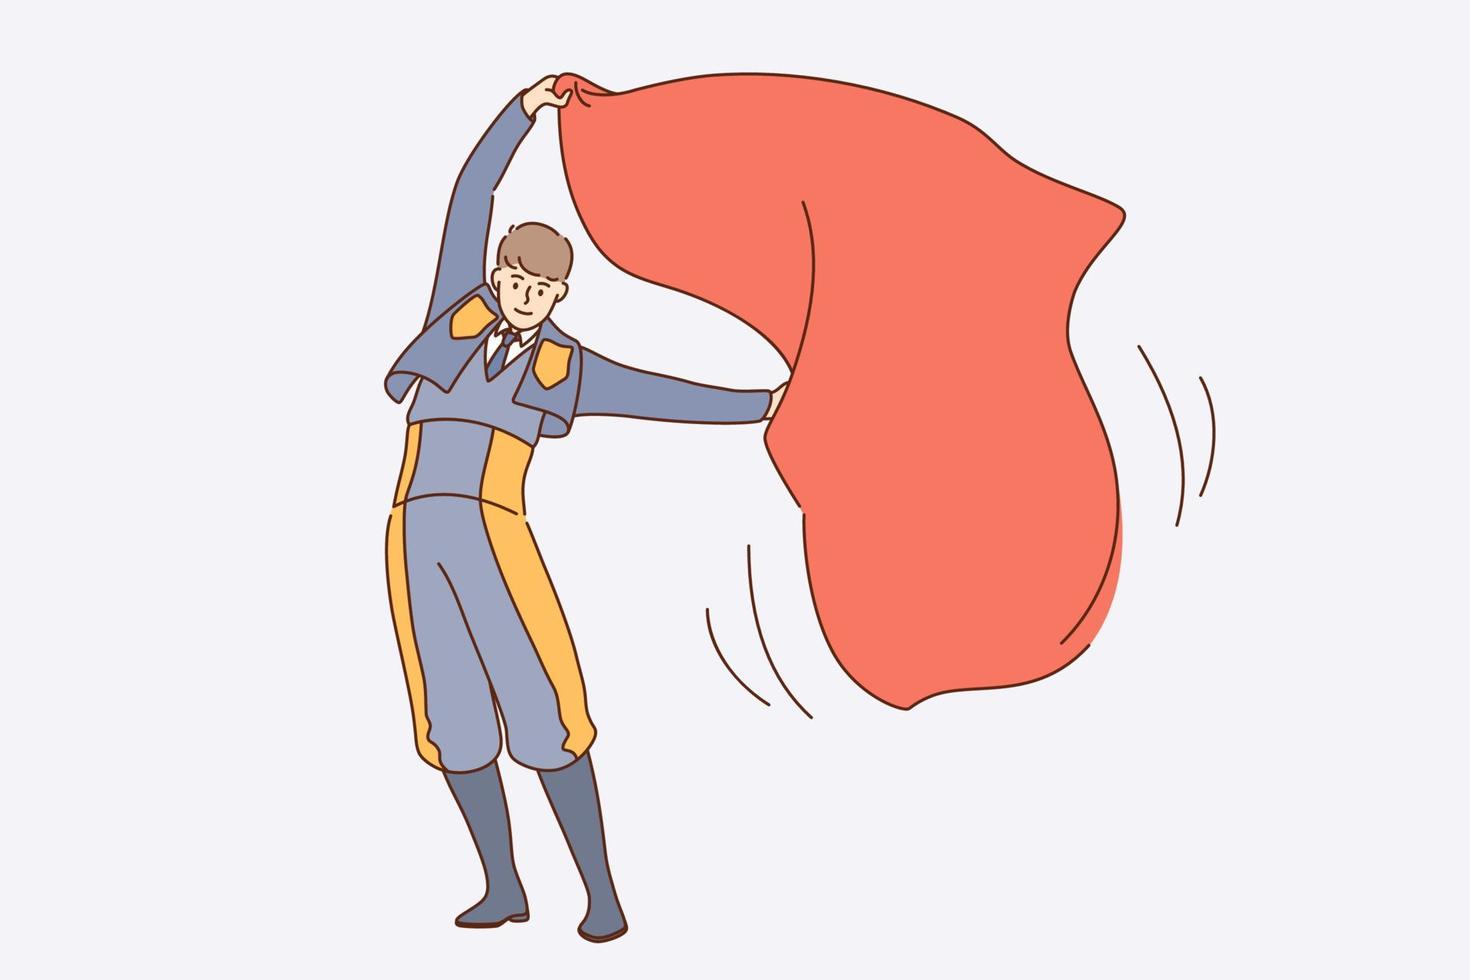 arbeiten als spanisches Stierkämpferkonzept. Stierkämpfer-Zeichentrickfigur des jungen Mannes in Uniform mit rotem Textil, das steht und Tuch in der Luft für Stiervektorillustration winkt vektor